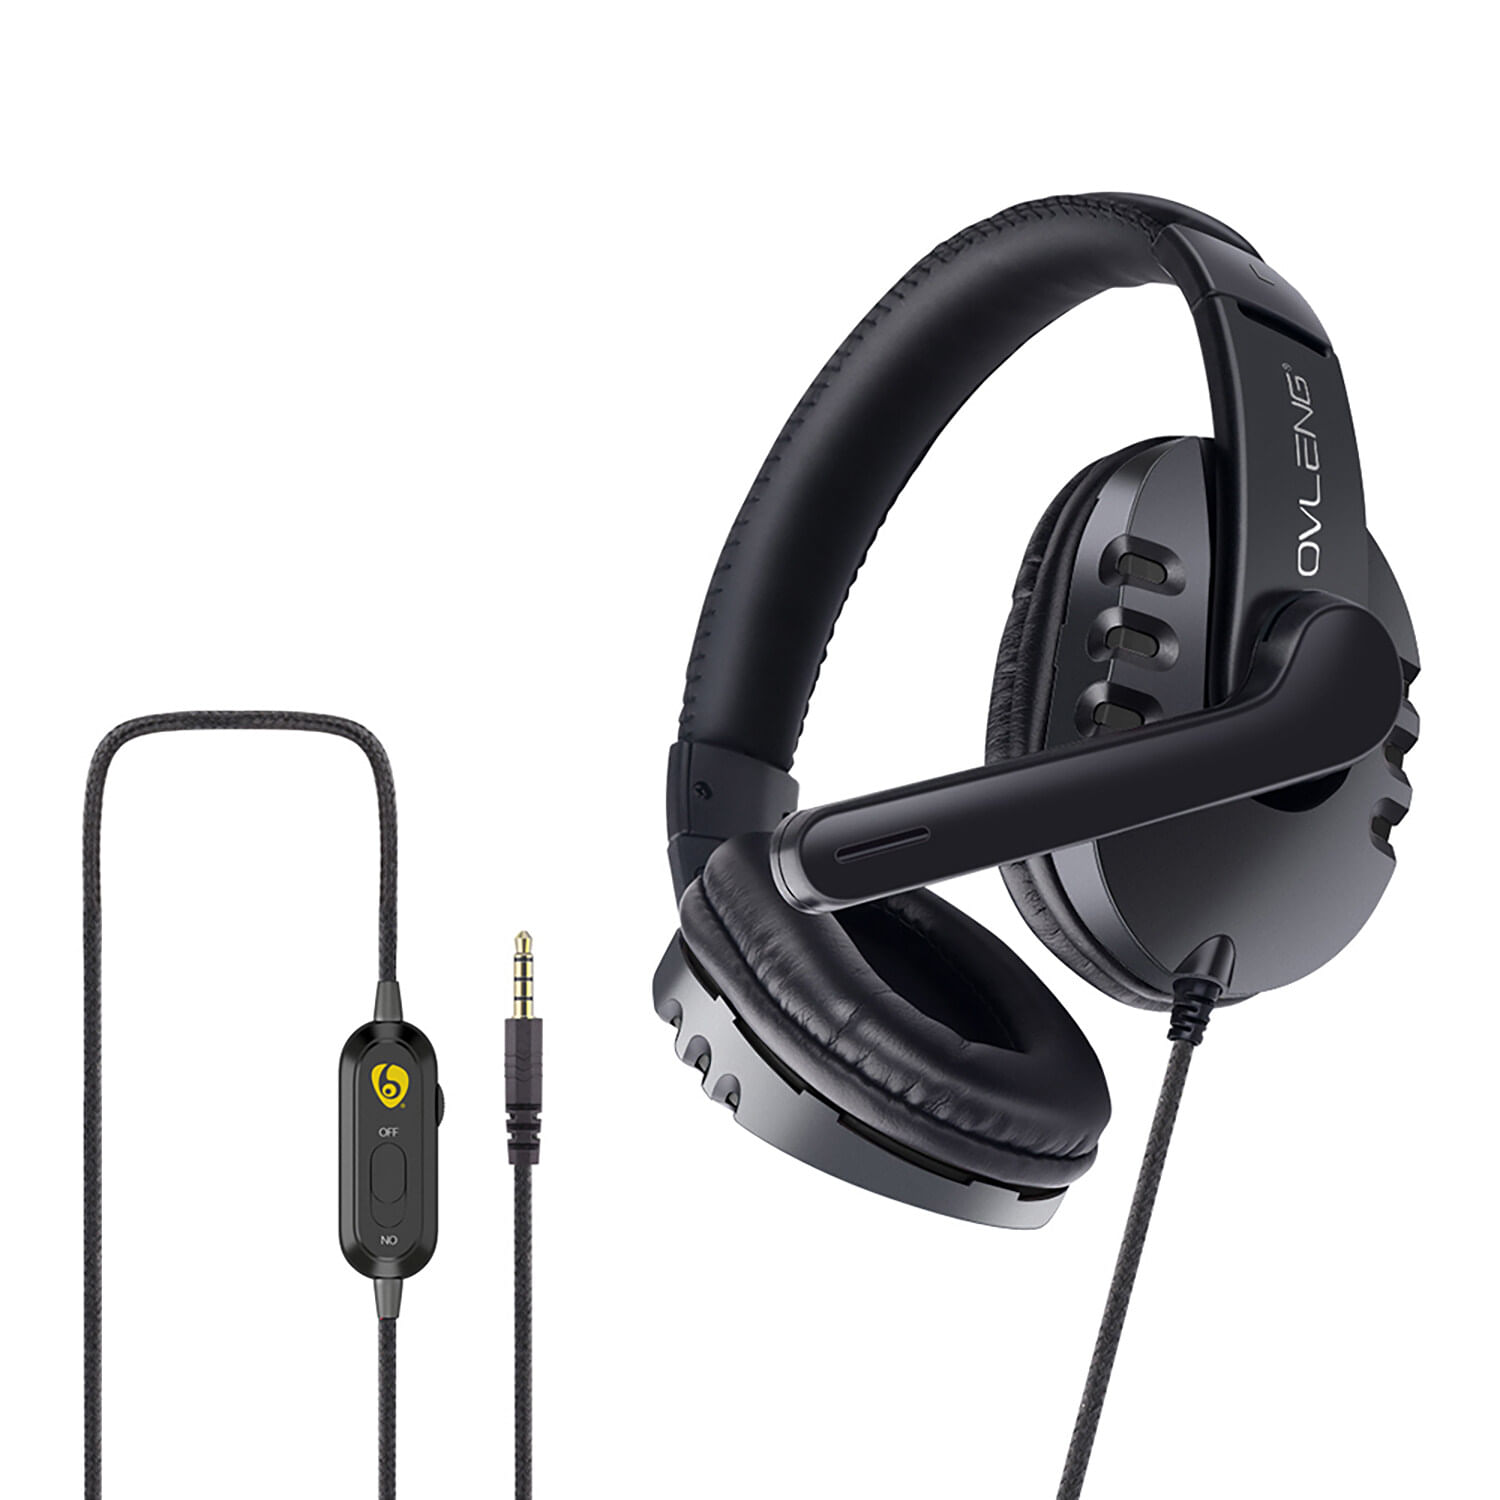 Audifonos Para Juegos Ovleng P3 3,5 Mm Con Cable Sobre La Oreja Diadema Ajustable Negro